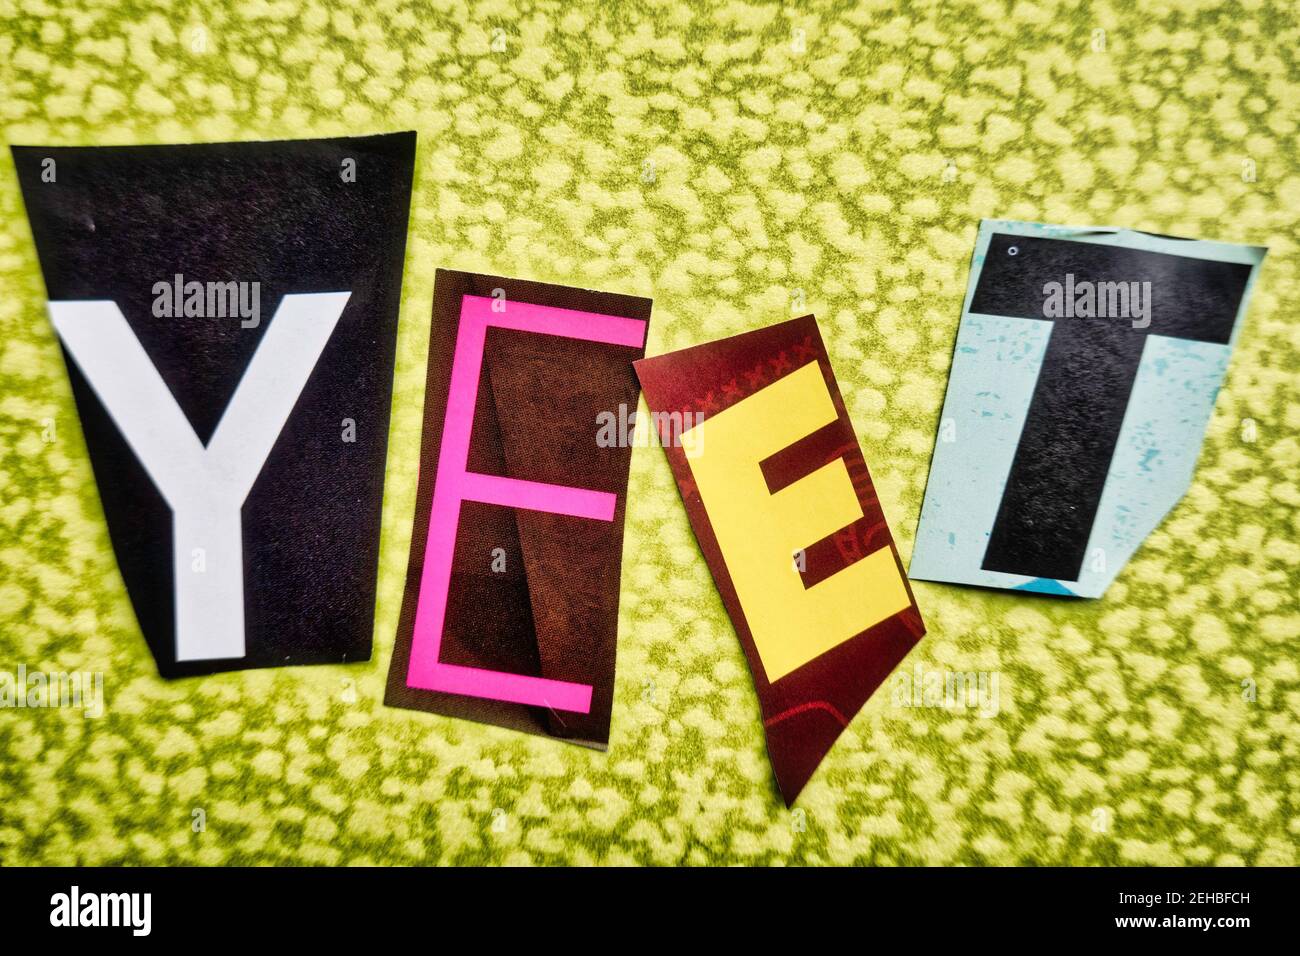 L'acronimo 'YEET' che usa lettere di carta ritagliata nella tipografia di effetto di nota di riscatto, USA Foto Stock